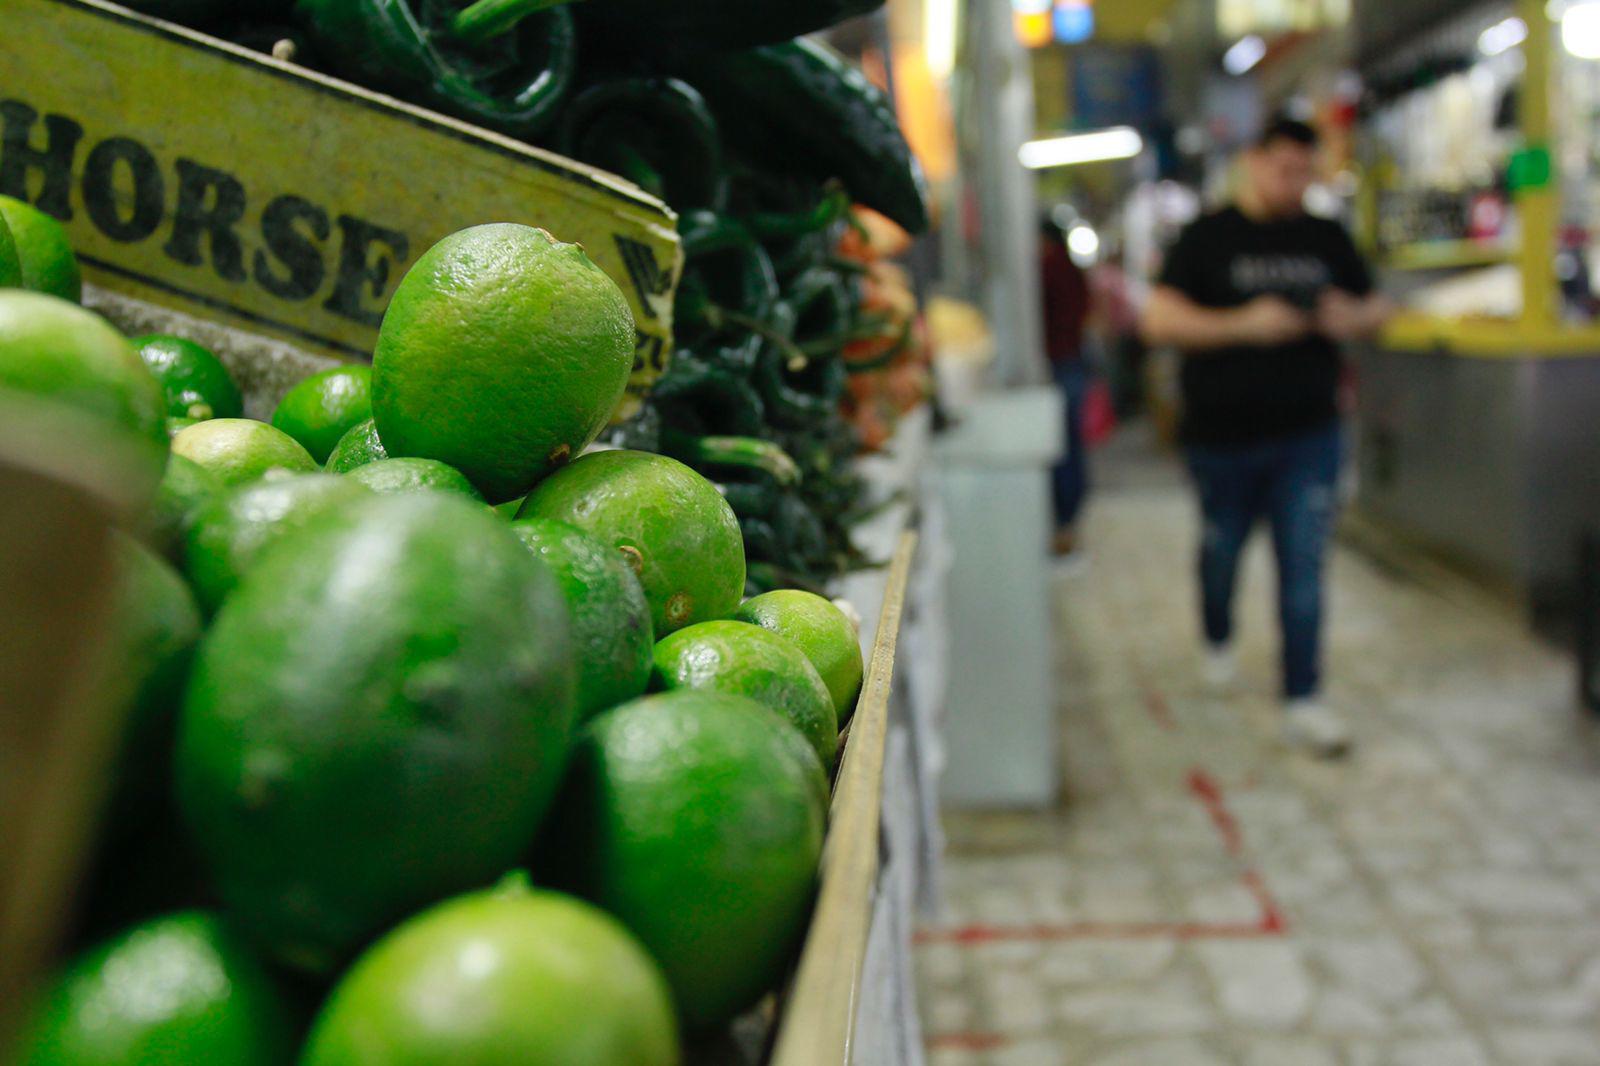 $!El kilo de limón podría mantenerse entre 70 y 80 pesos hasta abril, afirman en el mercado Garmendia de Culiacán